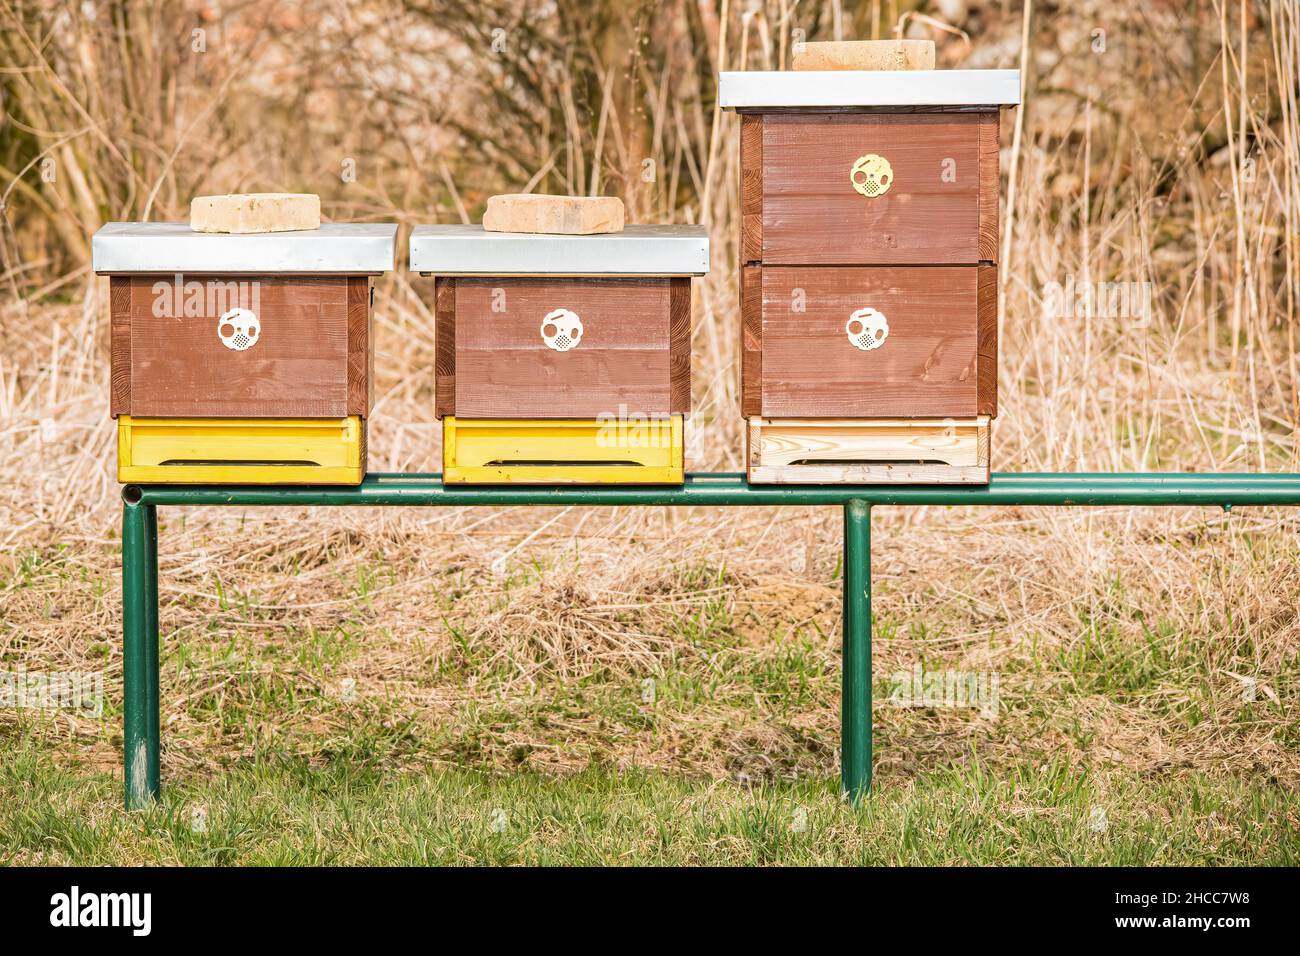 Trois petits apiculteurs se tenant côte à côte sur une structure métallique Banque D'Images